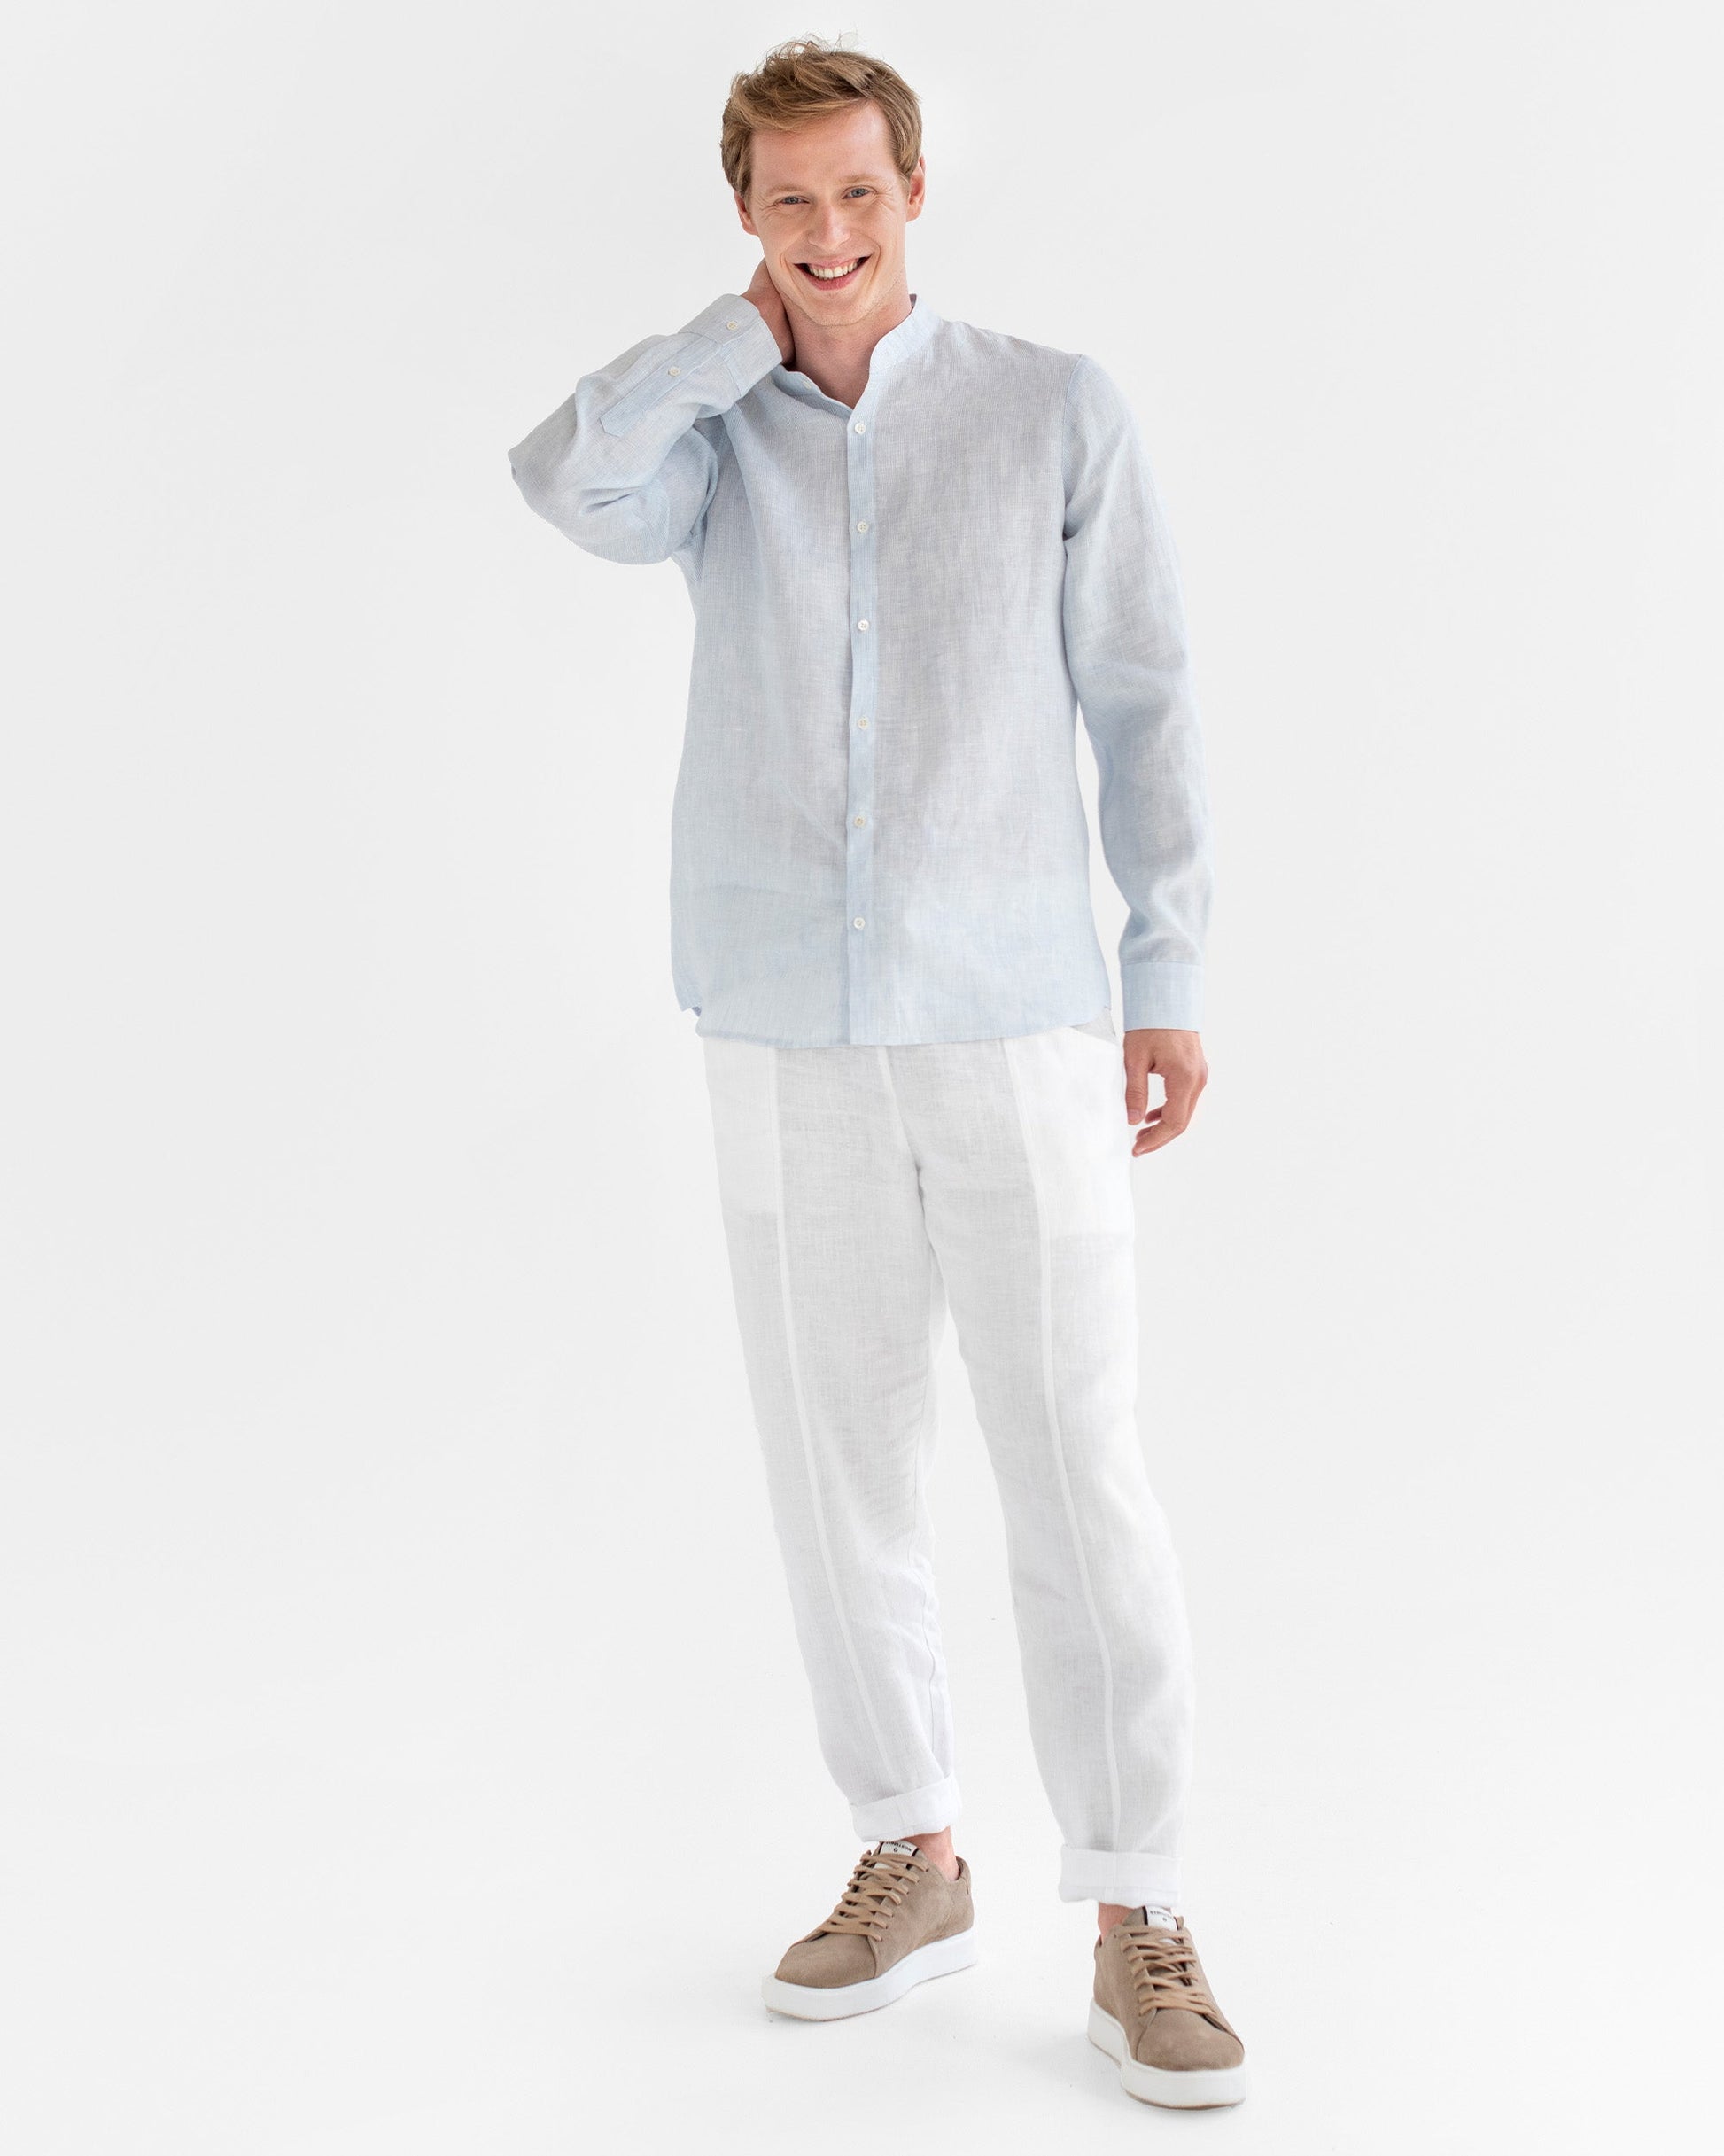 Men's linen band collar shirt BONAIRE in Pinstripe blue - MagicLinen